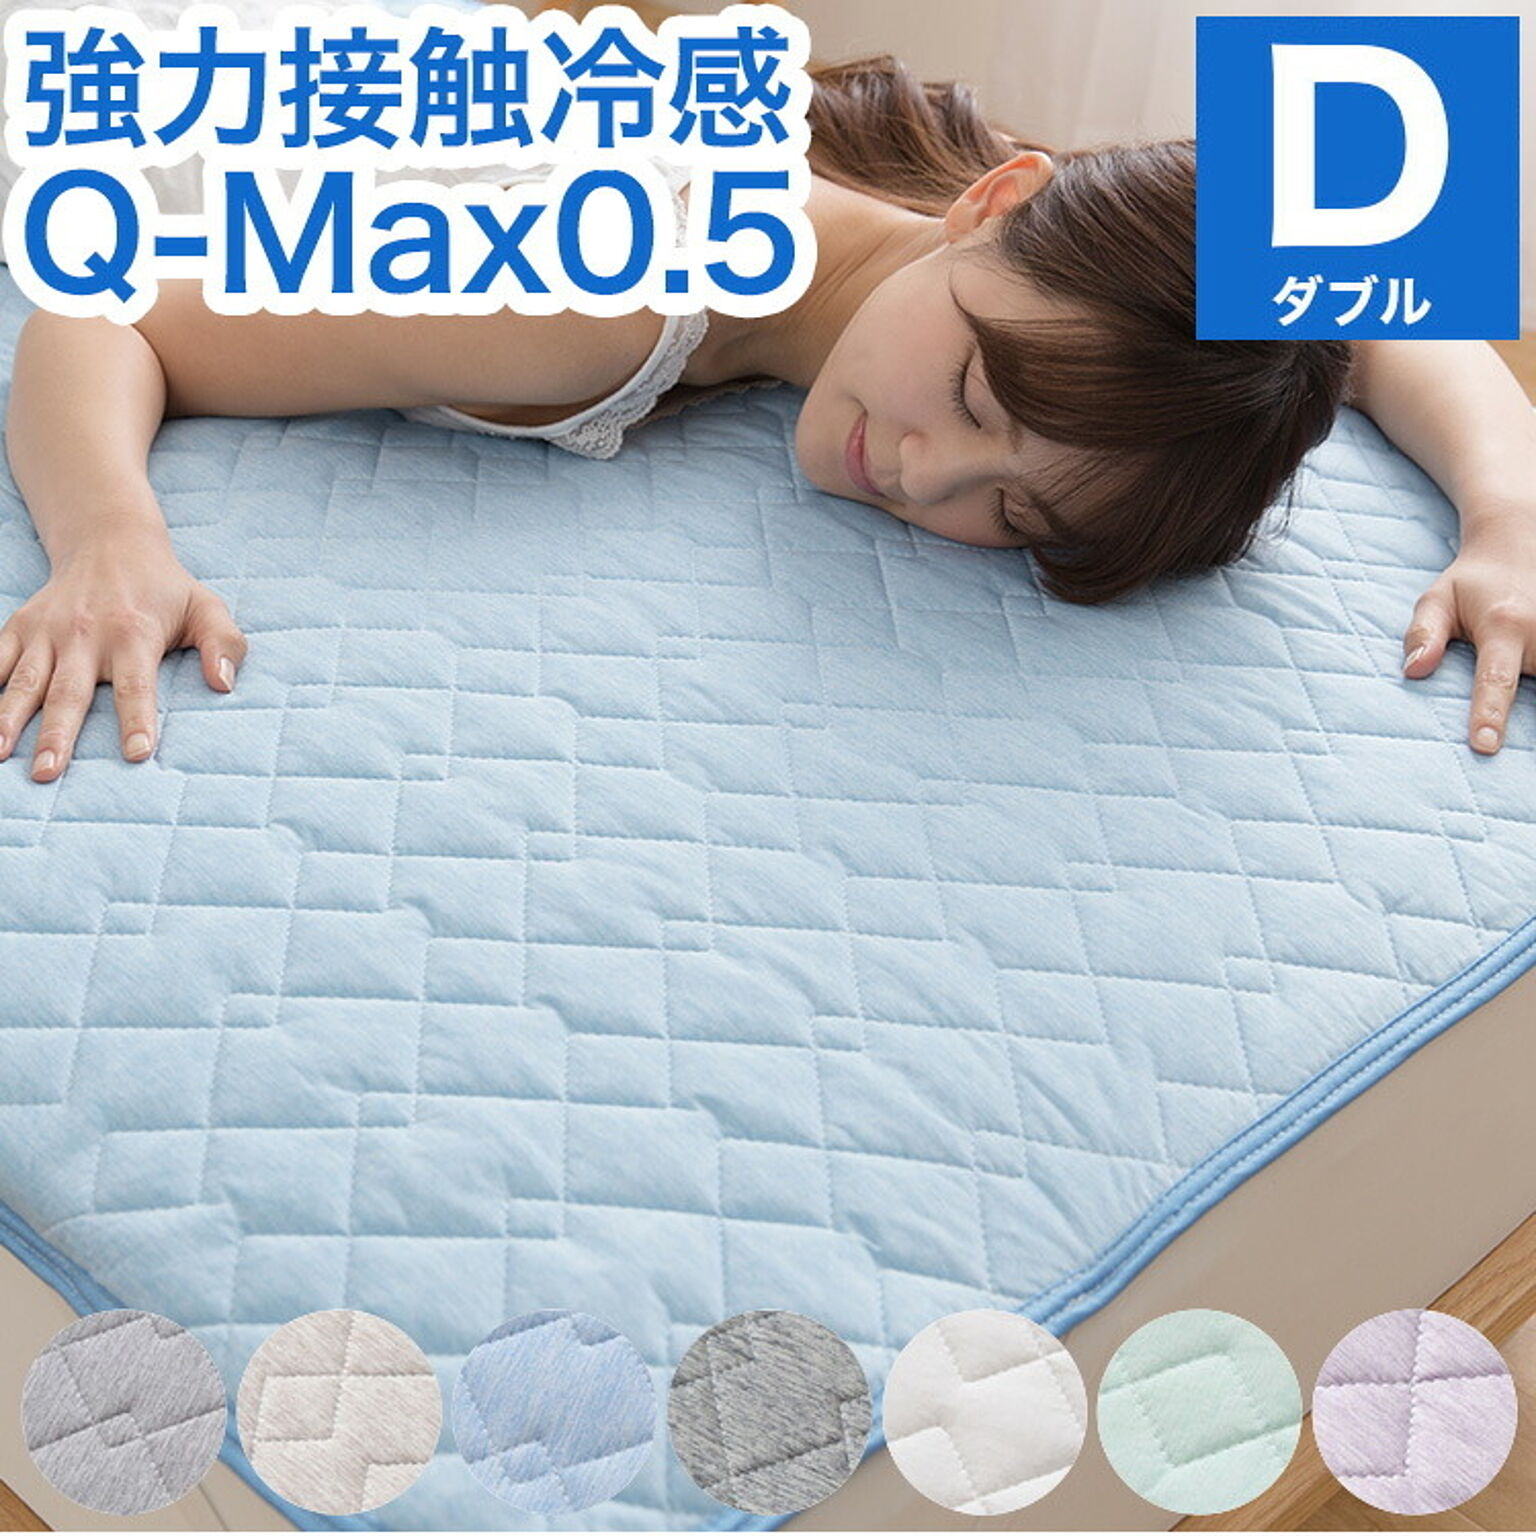 接触冷感 敷きパッド ダブル Q-MAX0.5 リバーシブル 抗菌防臭 冷却 省エネ エコ ひんやり クール 丸洗い 寝具 ウォッシャブル